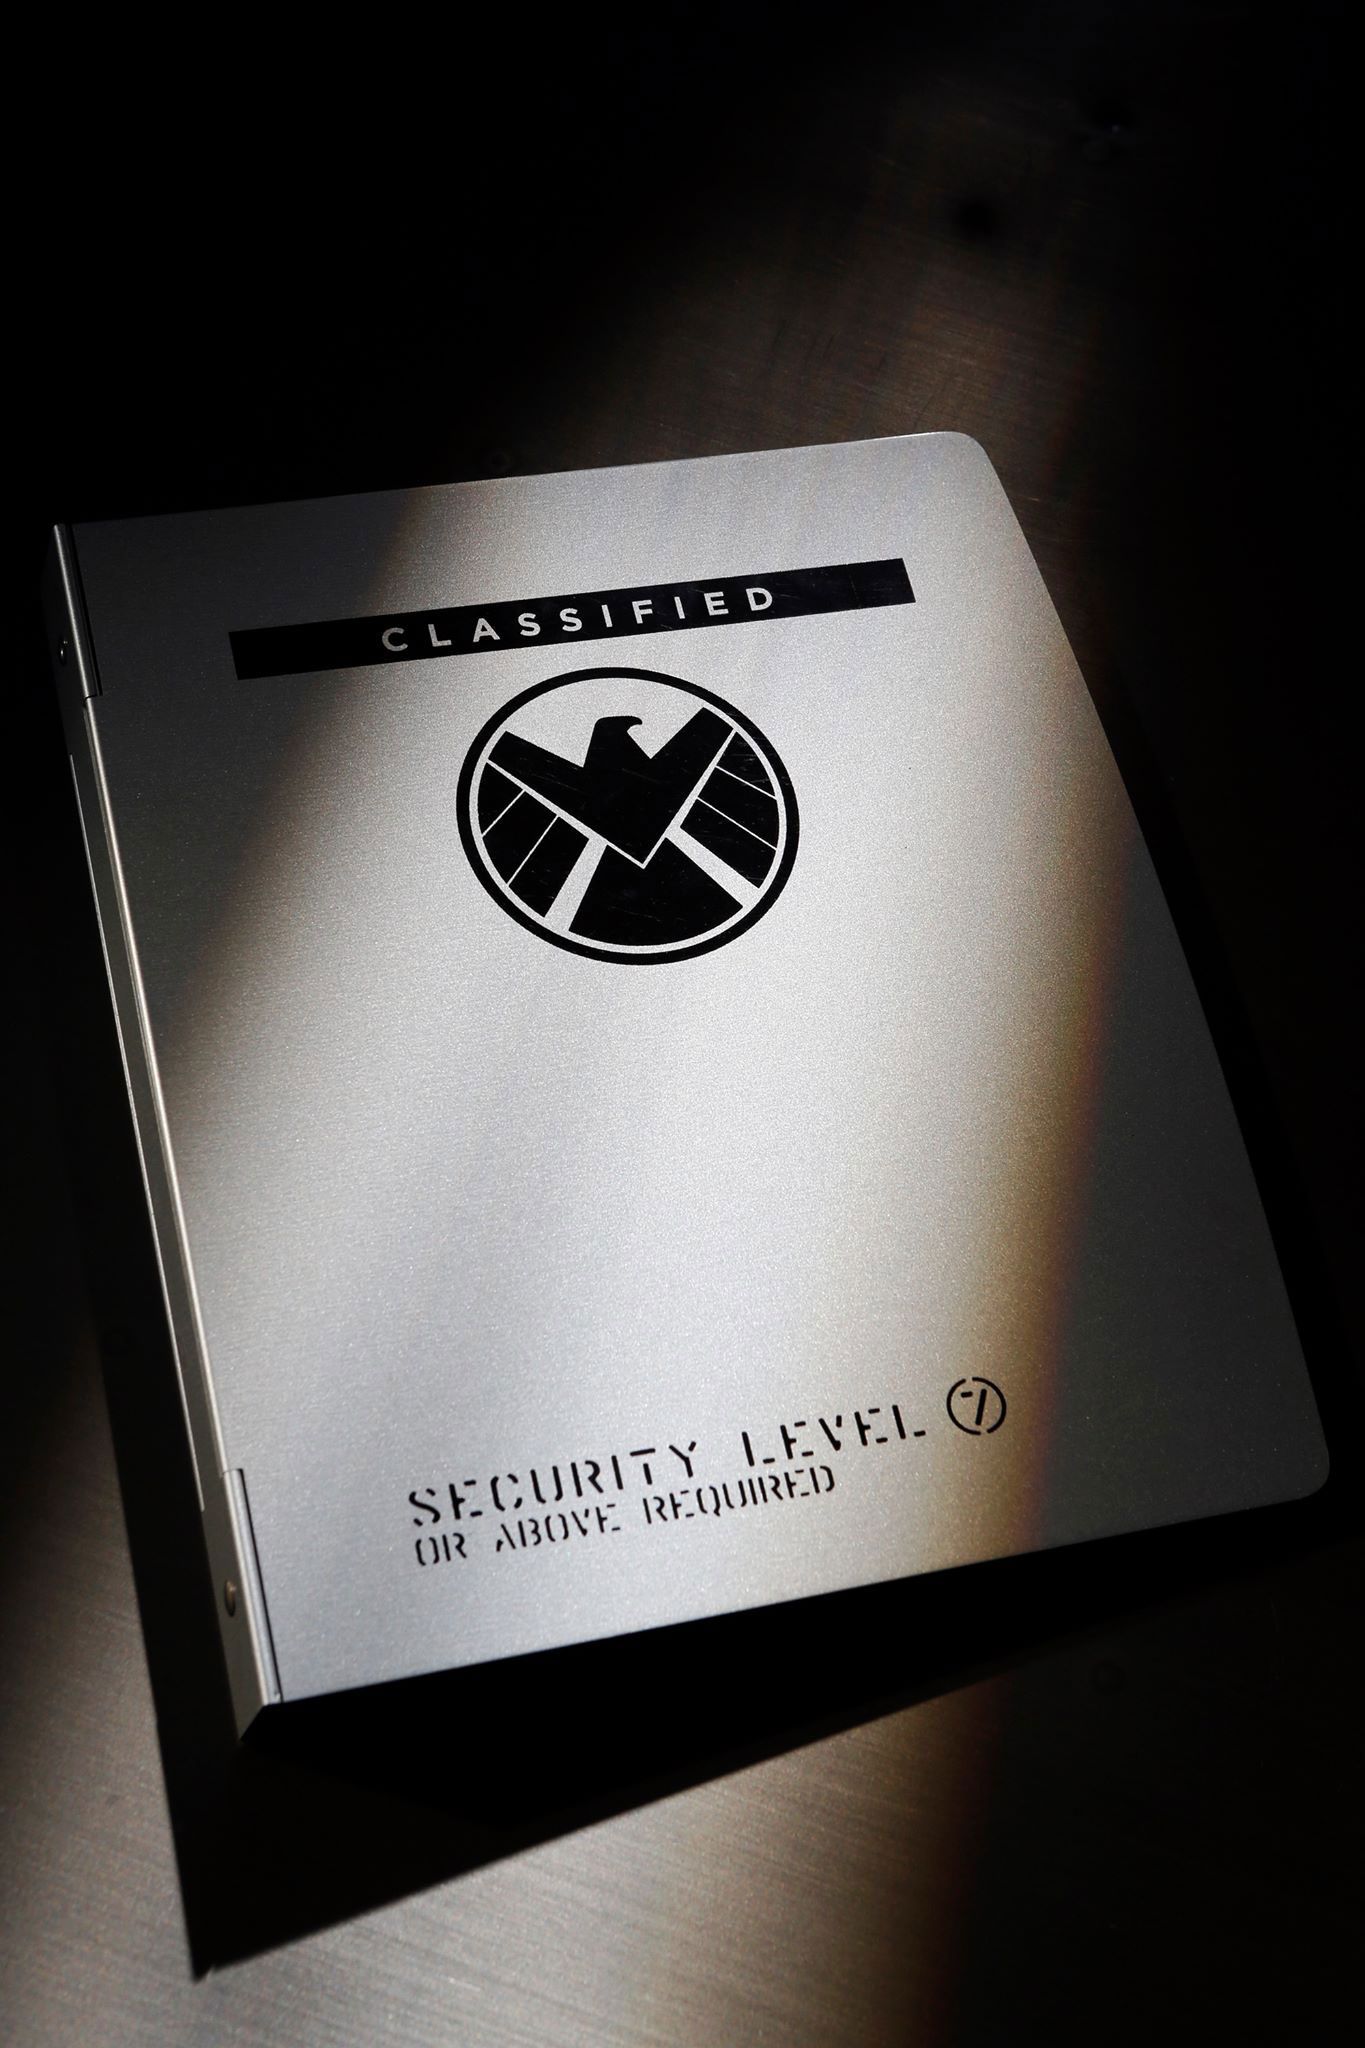 Marvel's Agents of S.H.I.E.L.D. Comic-Con 2013 Photo